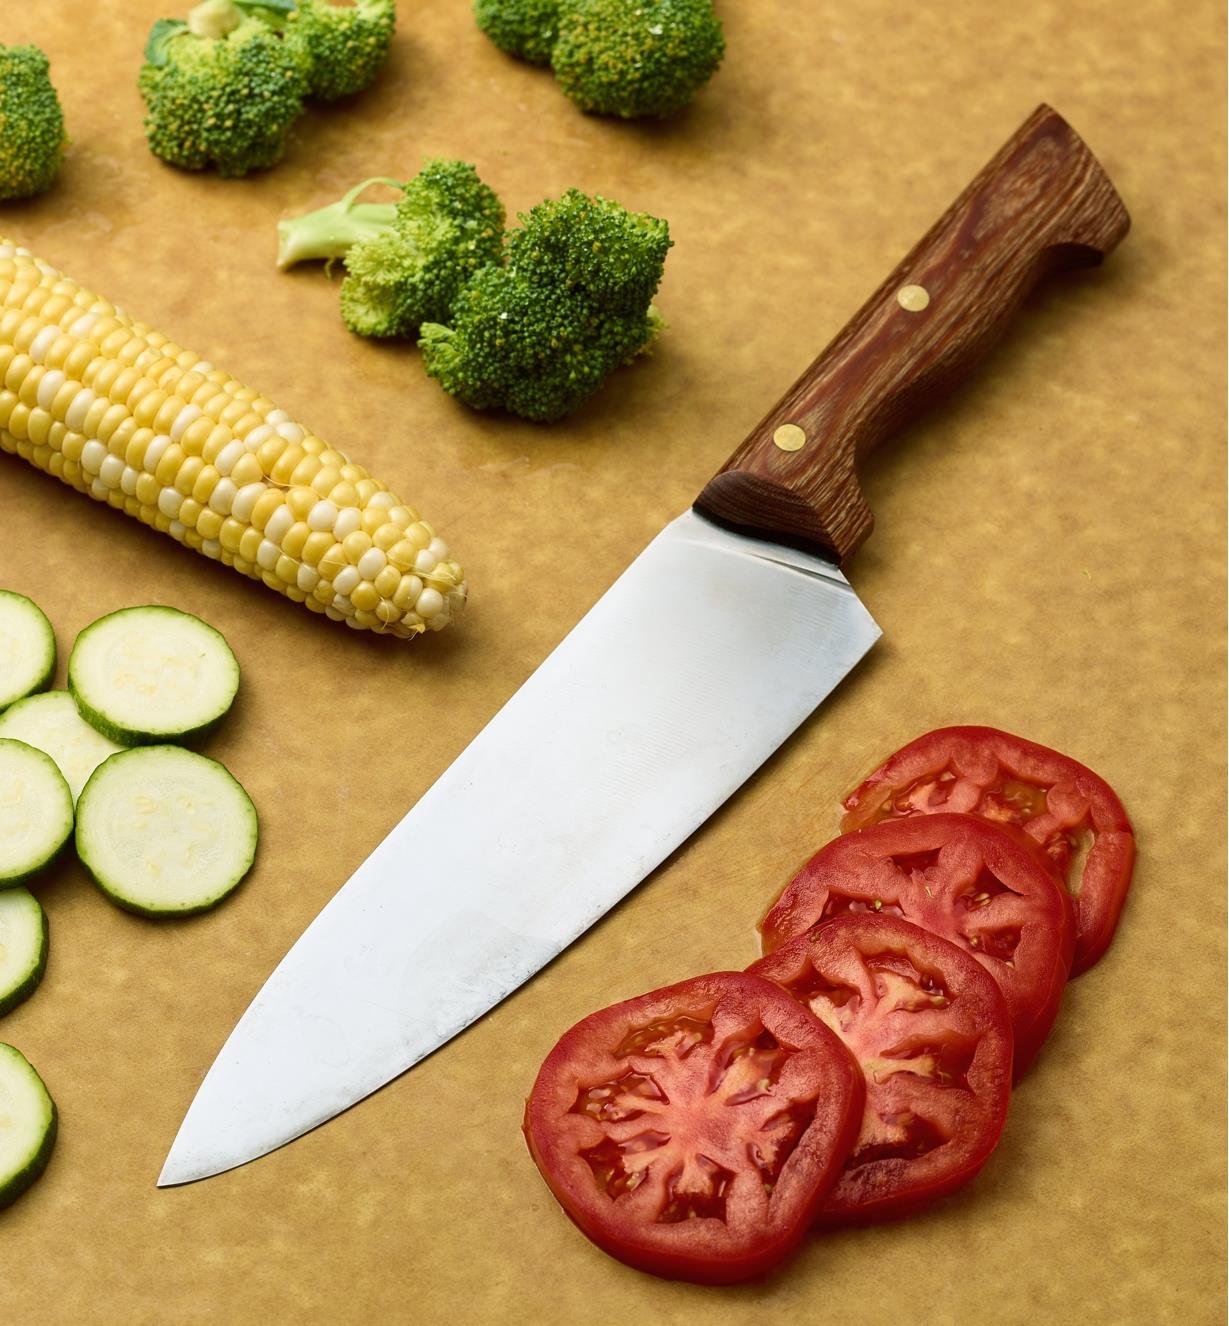 Grand couteau de chef à côté de rondelles de tomates et de courgettes, d’un épi de maïs et de fleurons de brocoli